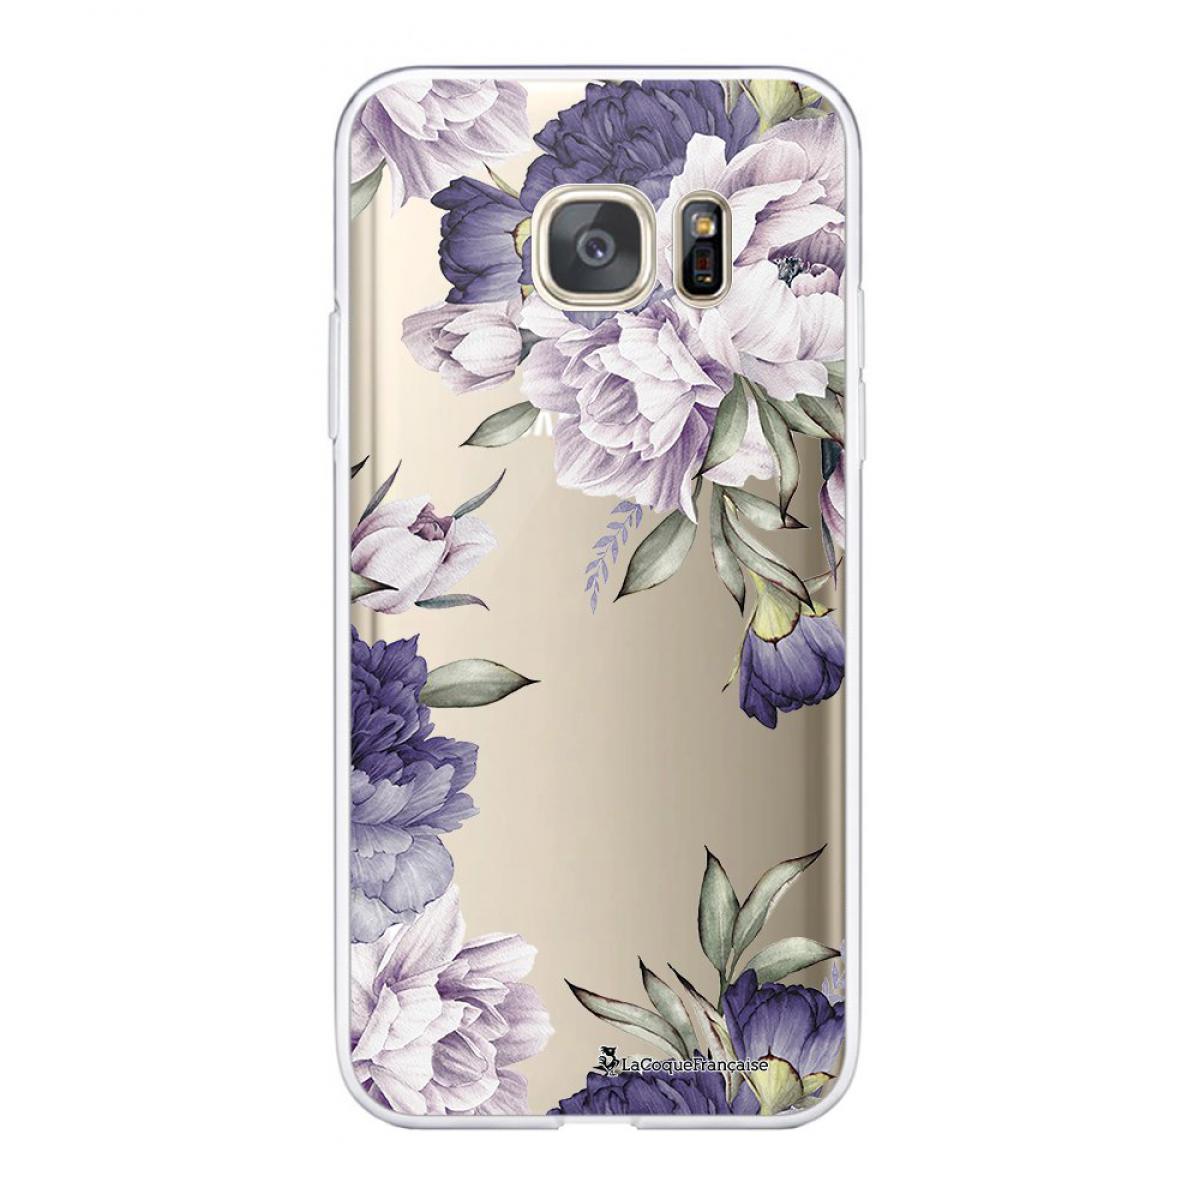 La Coque Francaise - Coque Samsung Galaxy S7 souple transparente Pivoines Violettes Motif Ecriture Tendance La Coque Francaise - Coque, étui smartphone